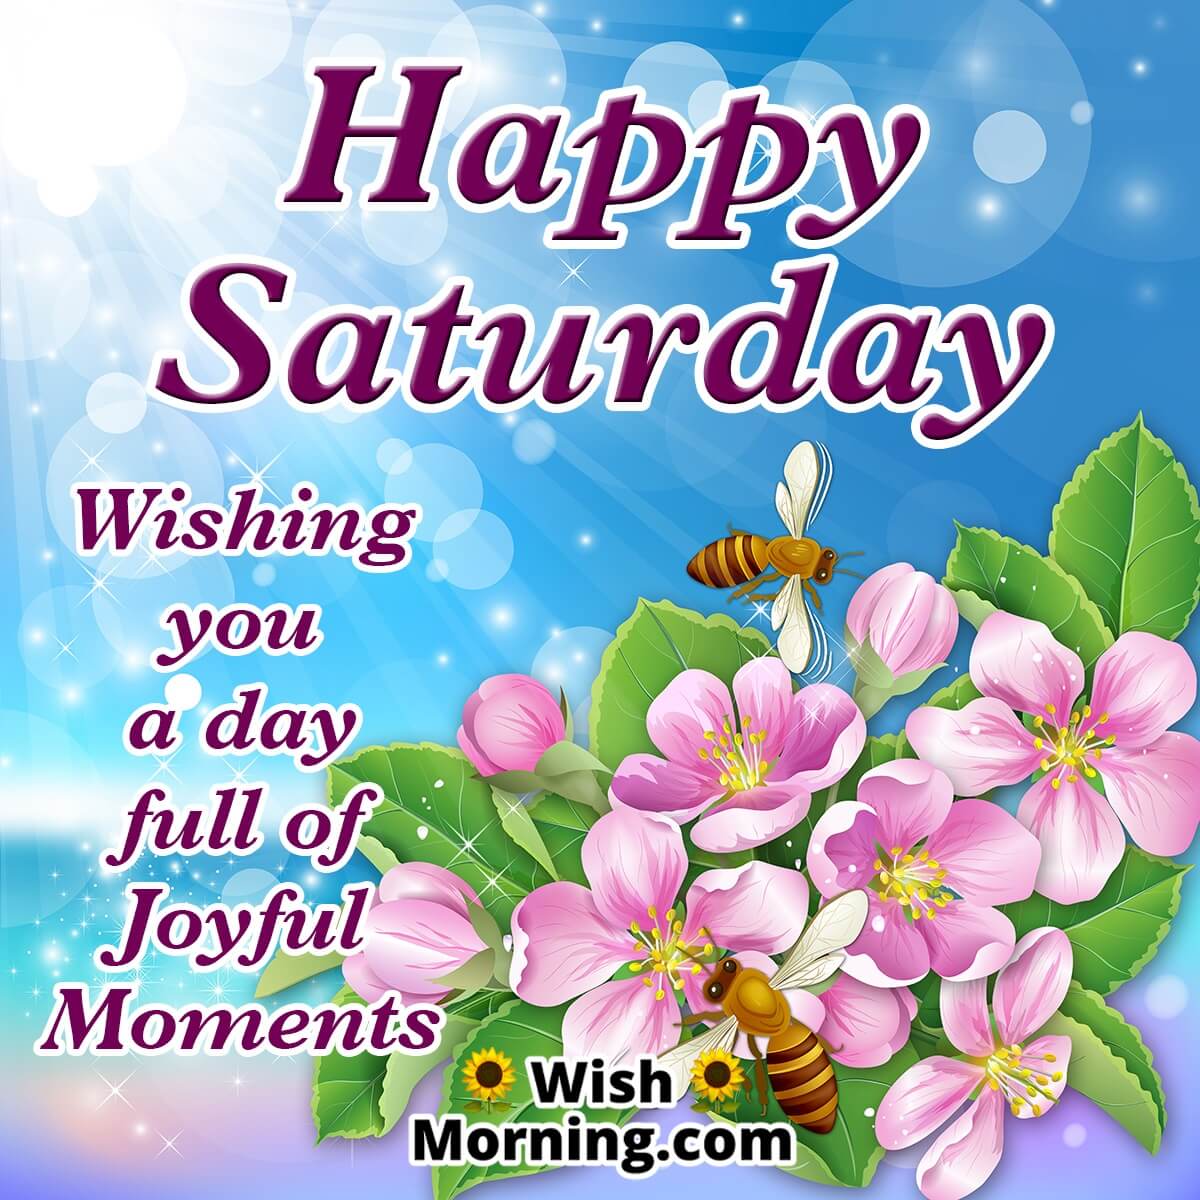 Happy Saturday Wish Image